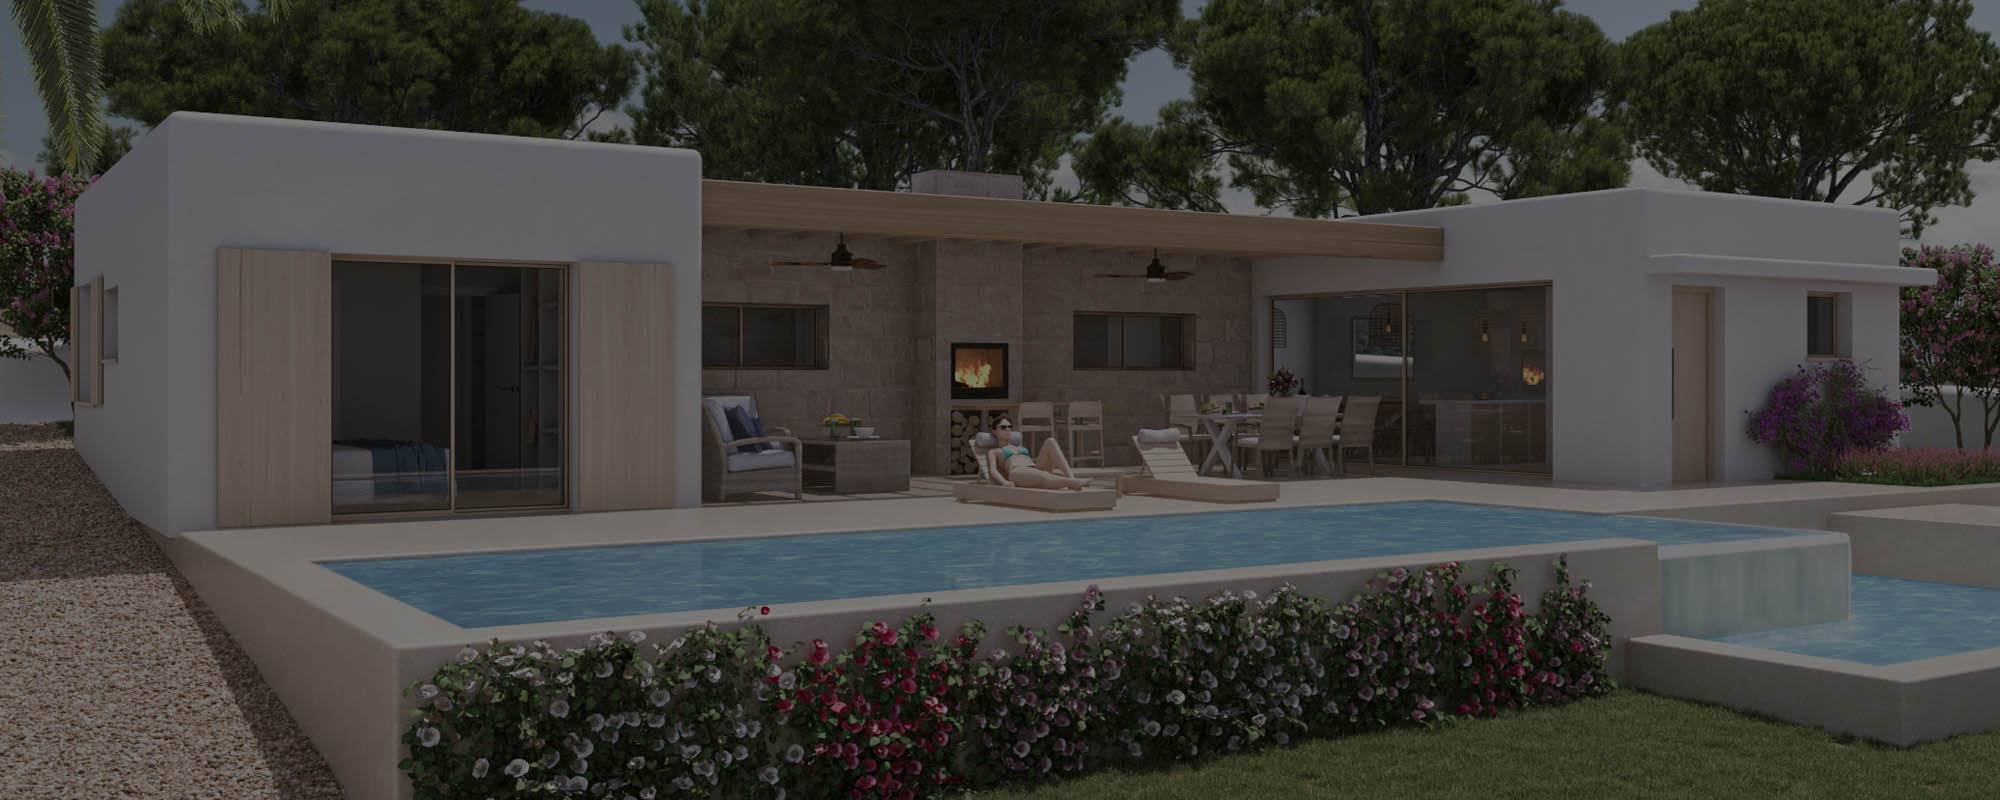 Renders 3D de una vivienda en Menorca